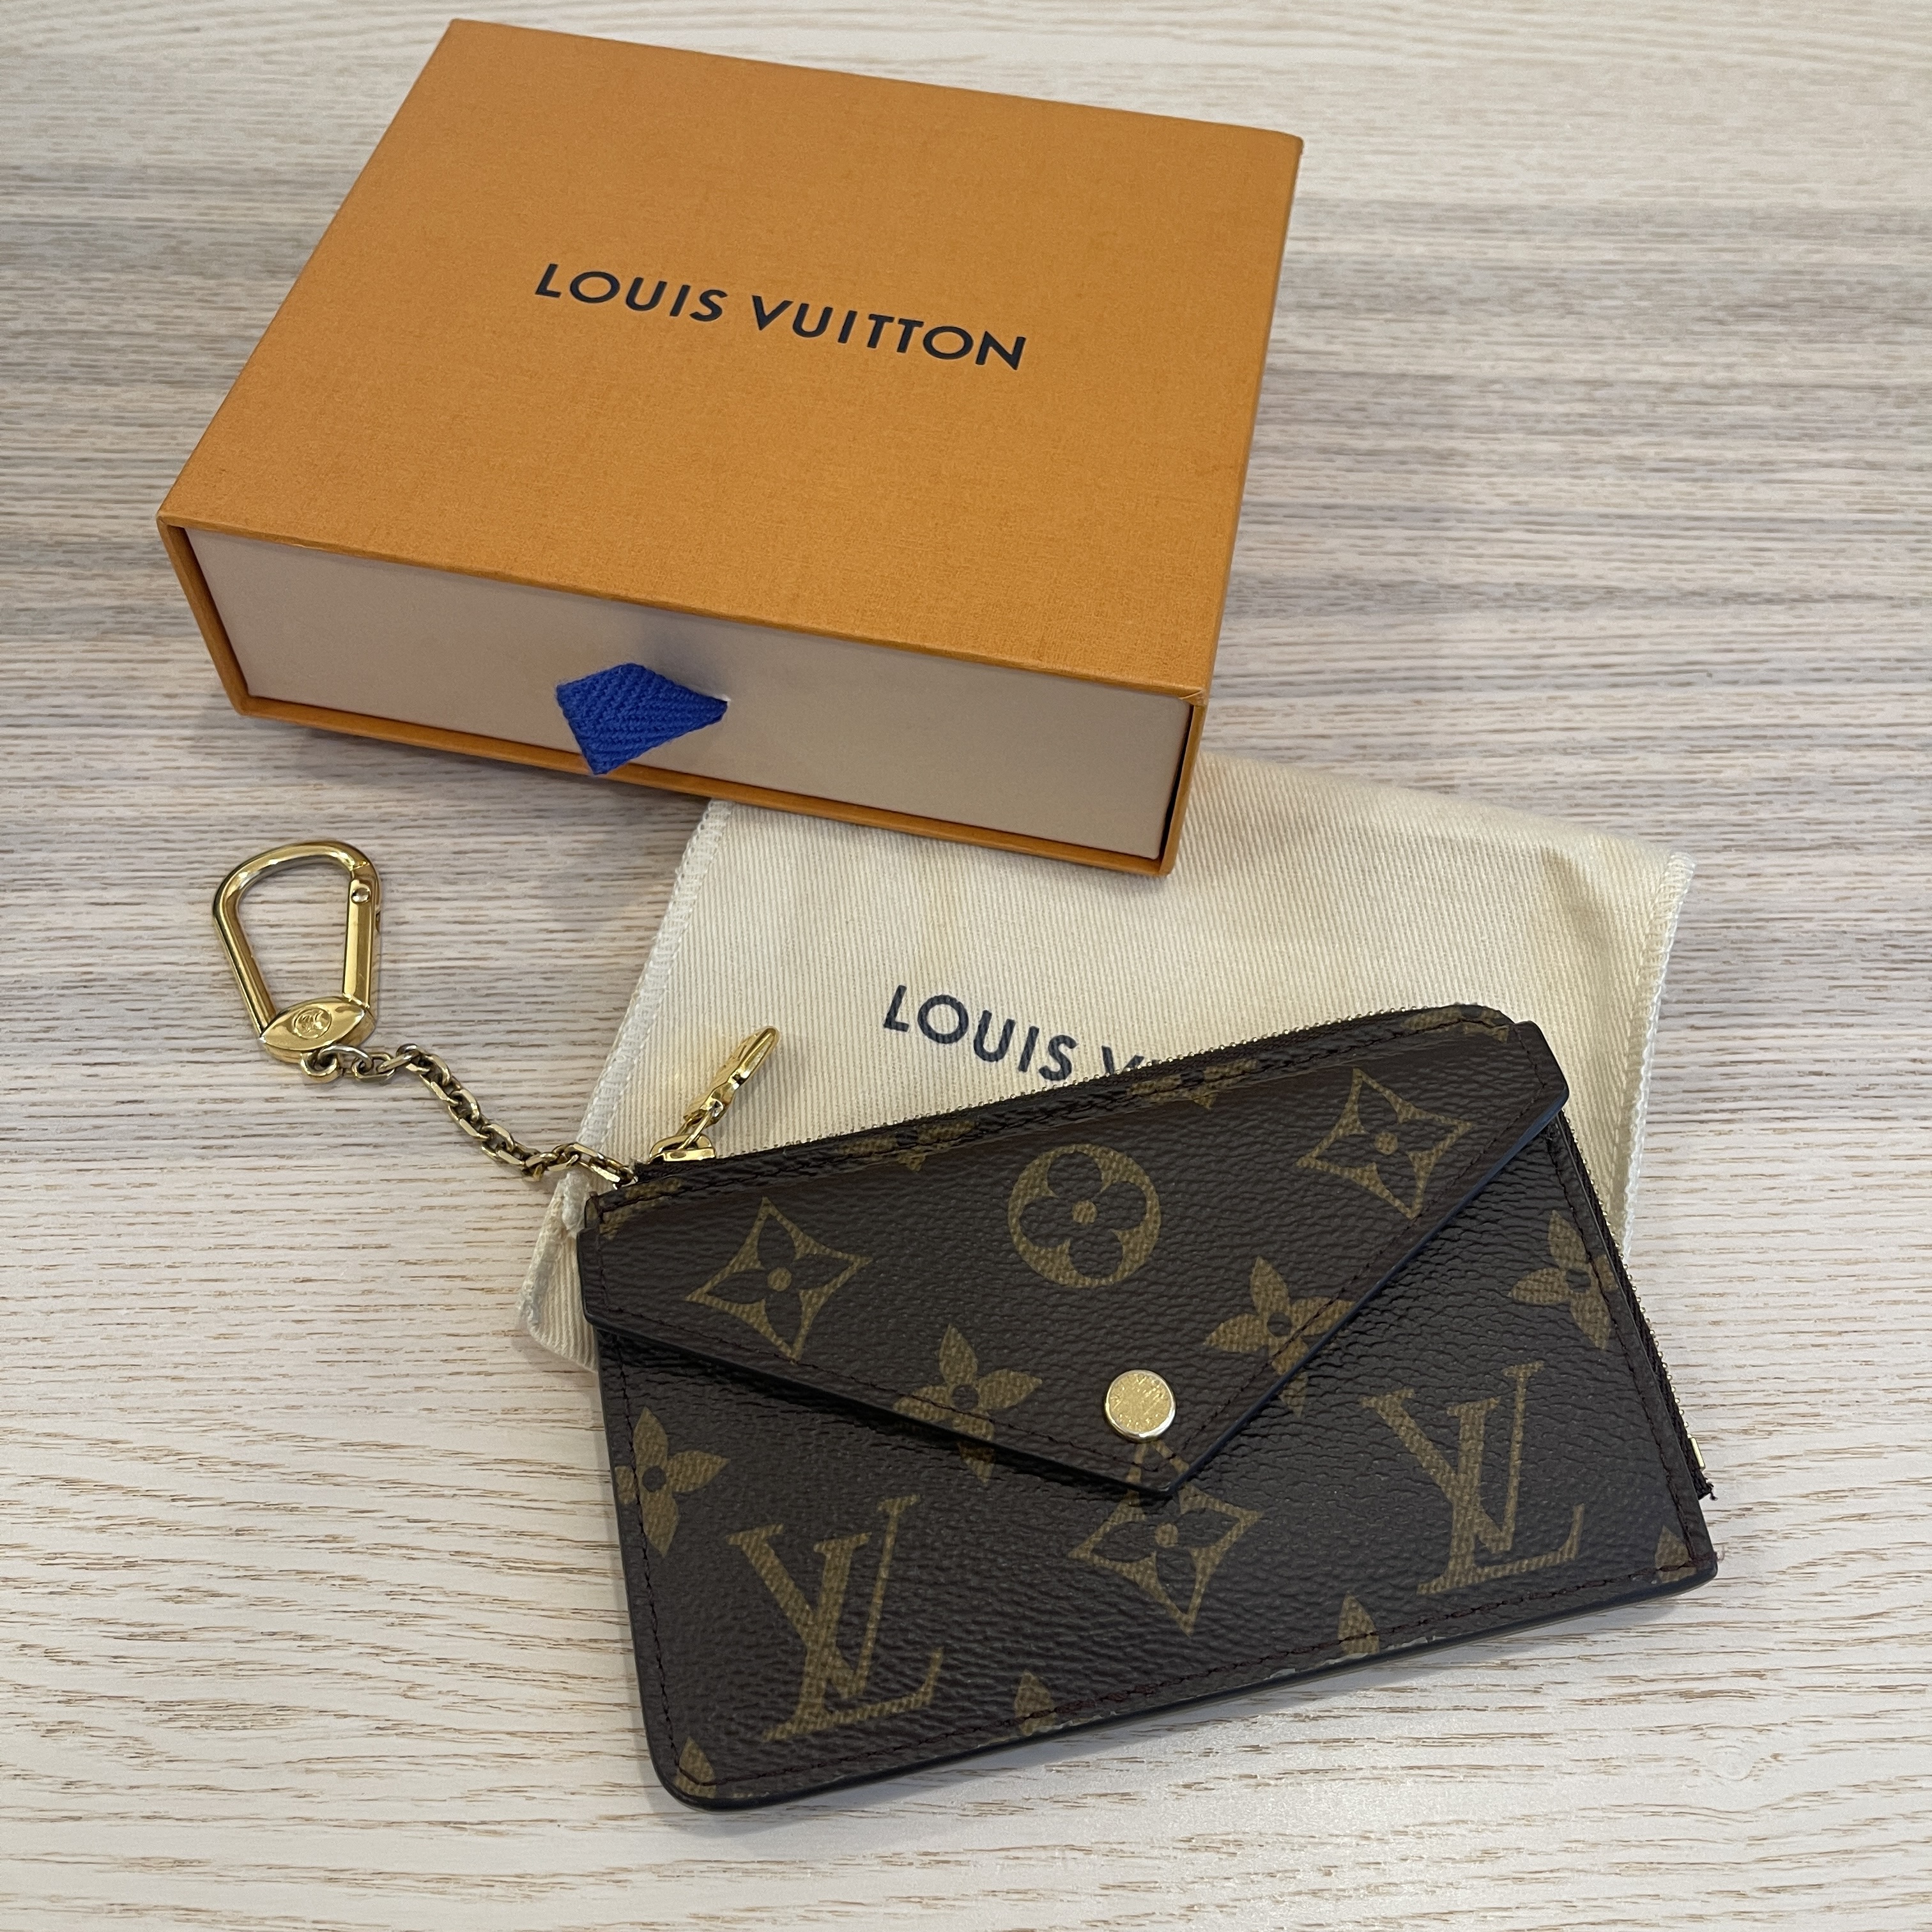 Louis Vuitton Recto Verso Monogram Card Holder